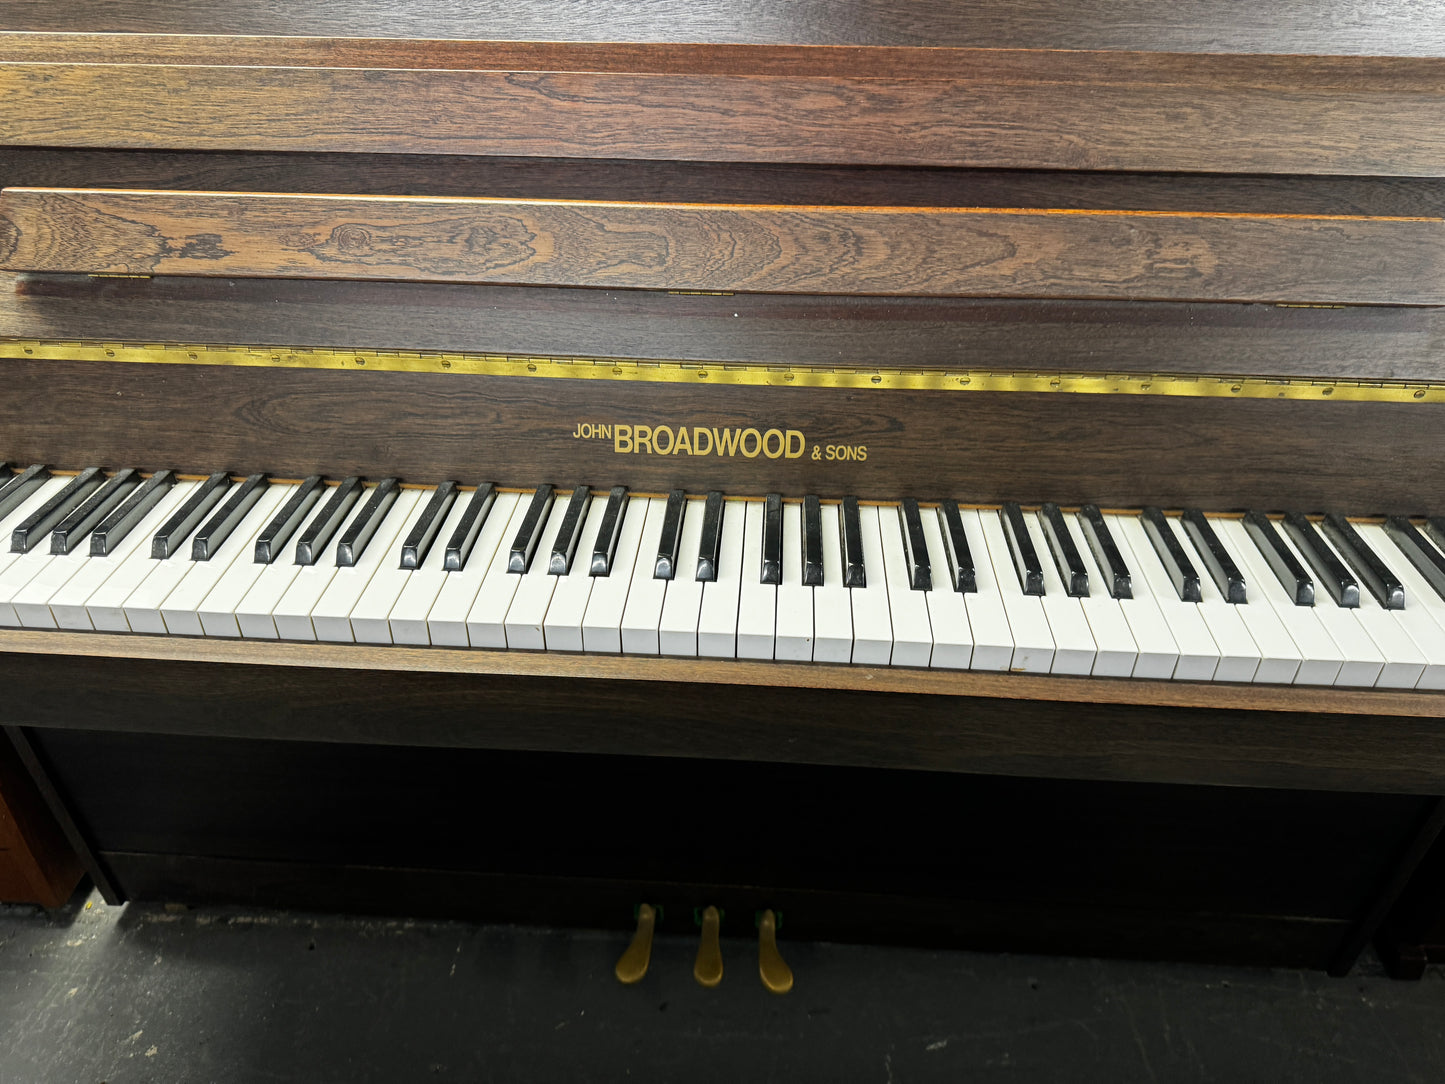 Broadwood Upright Piano